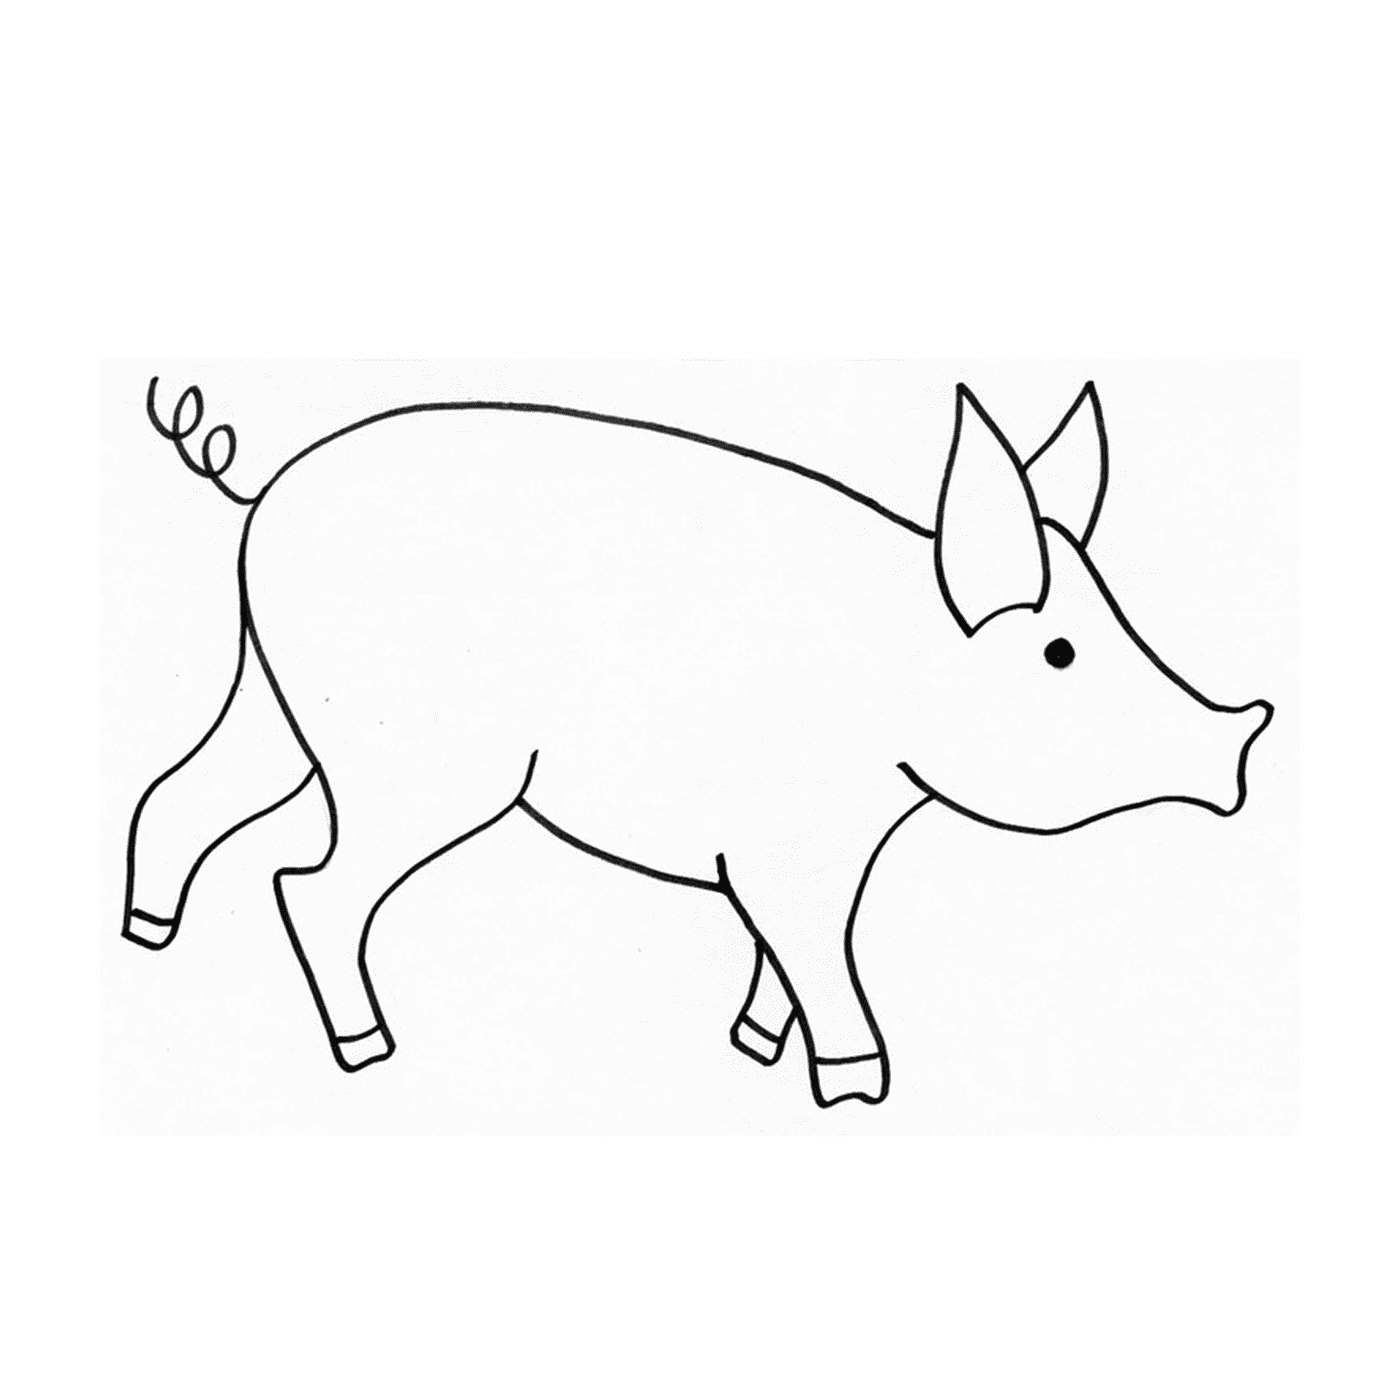  Ein Zwergschwein im Zeichenstil 